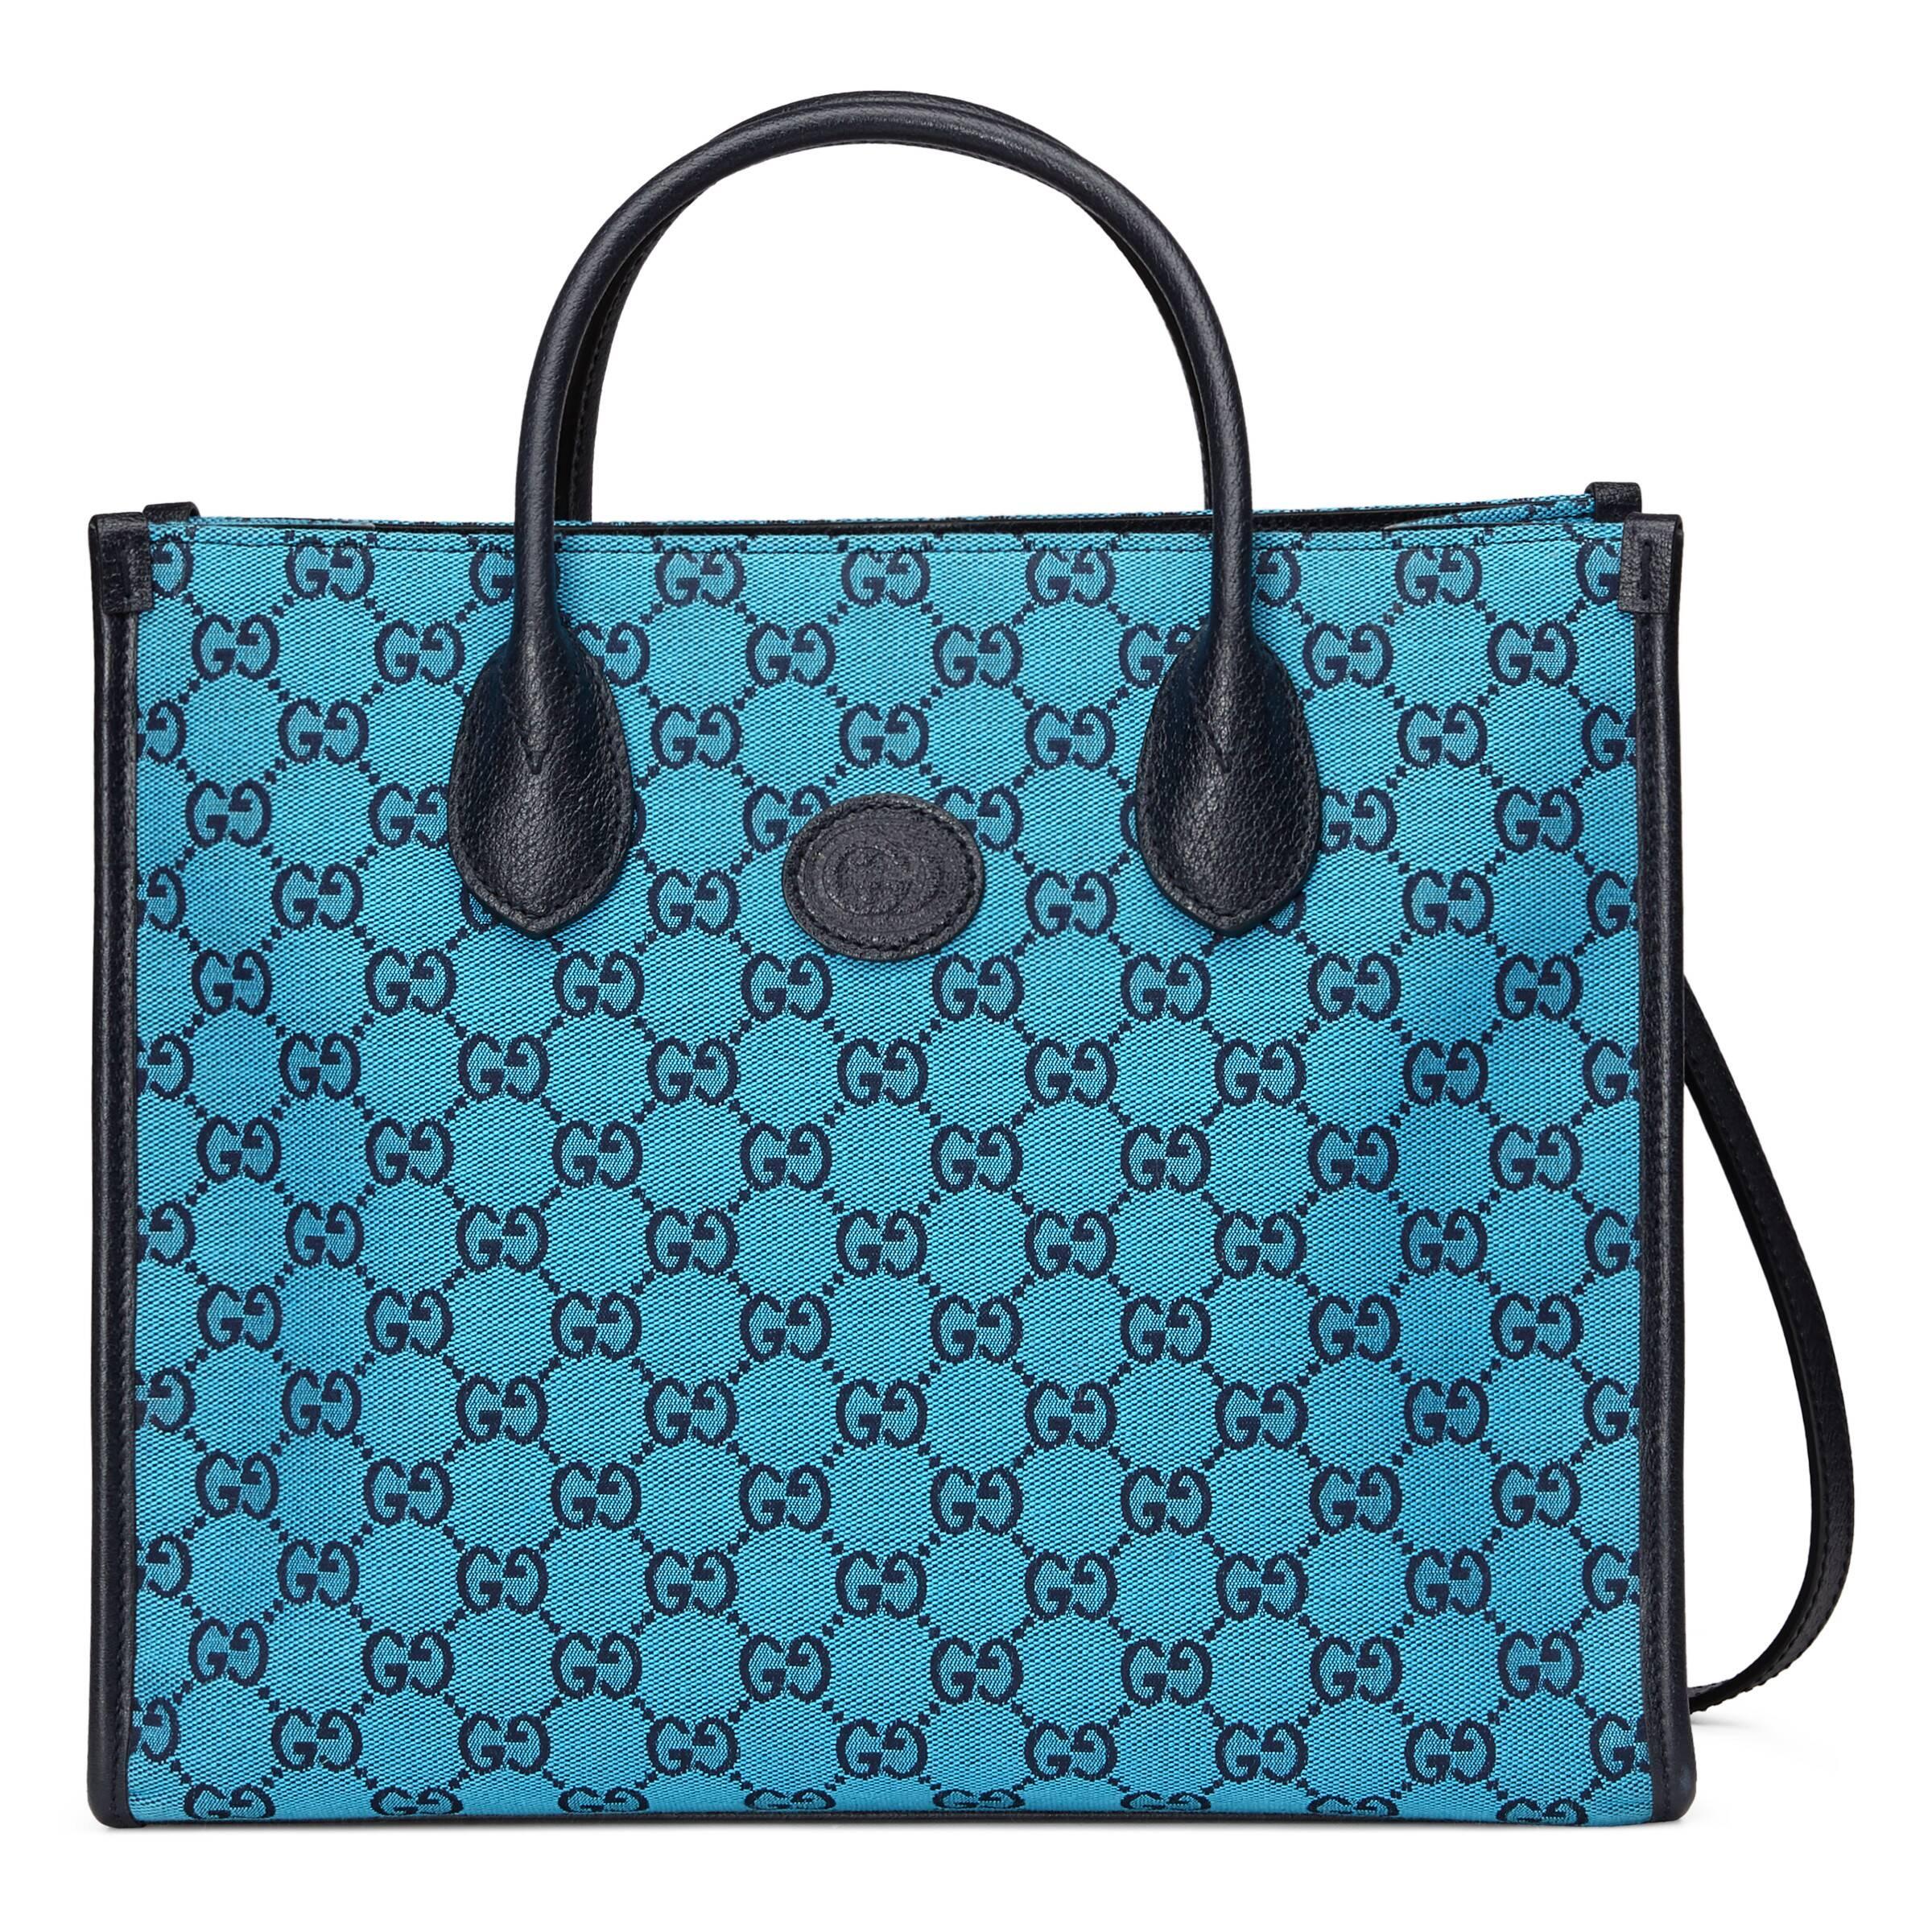 Buy GUCCI Women Multicolor Shoulder Bag Online @ Best Price in India |  Flipkart.com